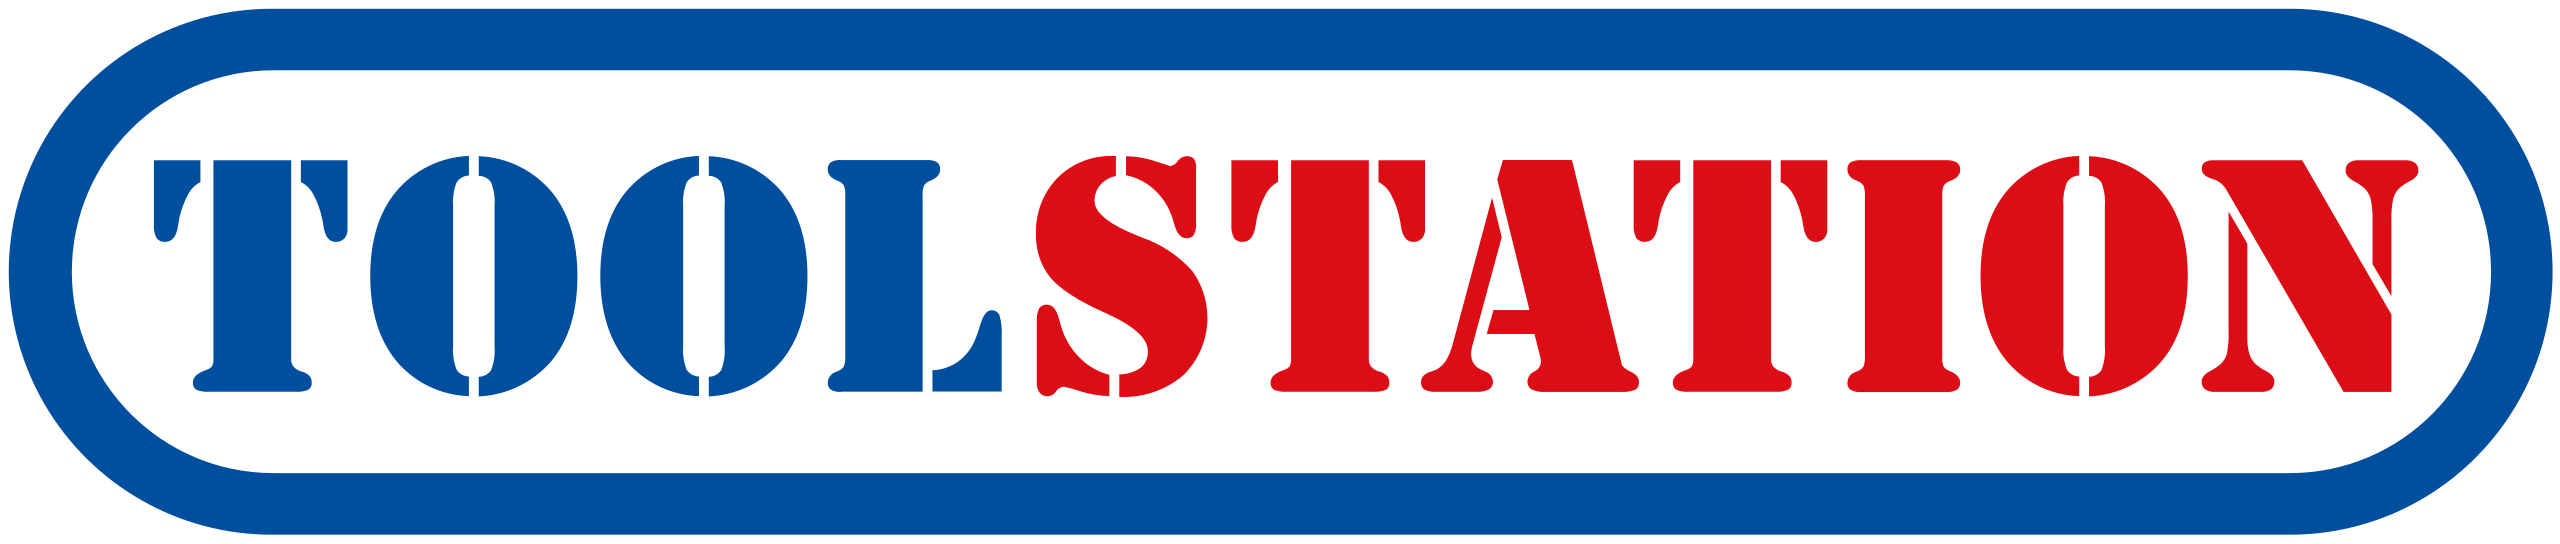 Toolstation_logo.svg